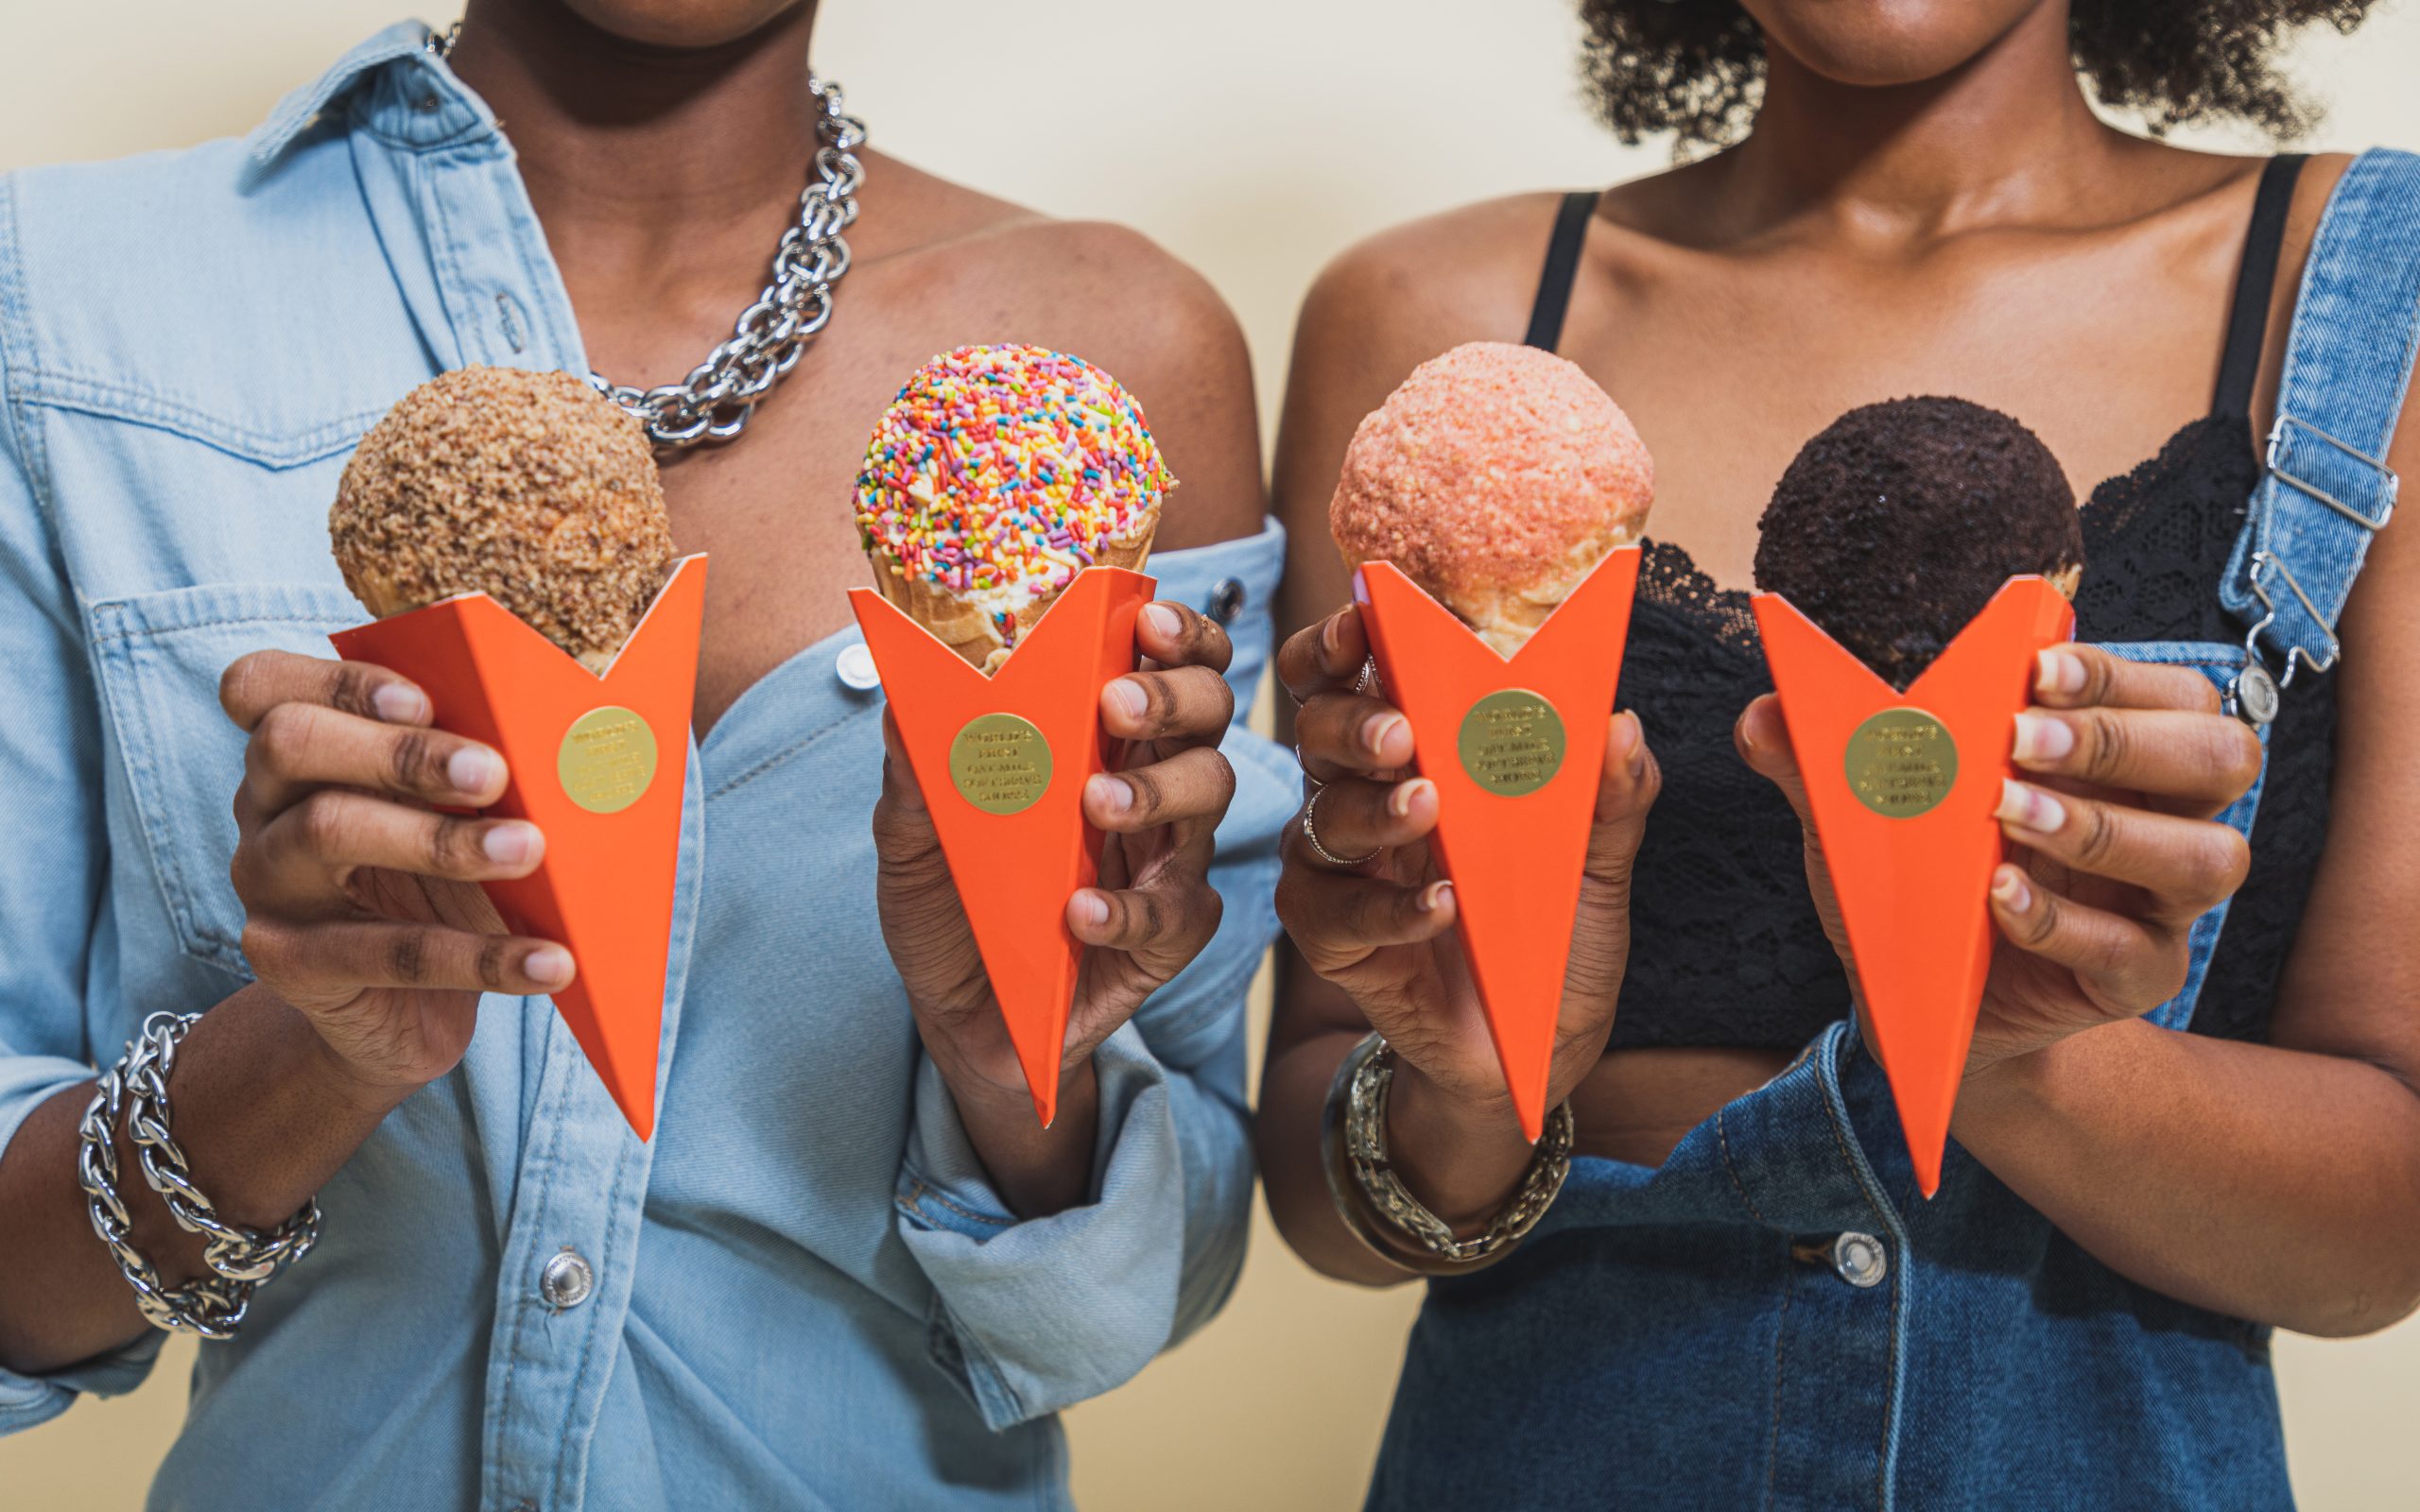 Four vegan ice cream cones from Whipped Urban Dessert Lab